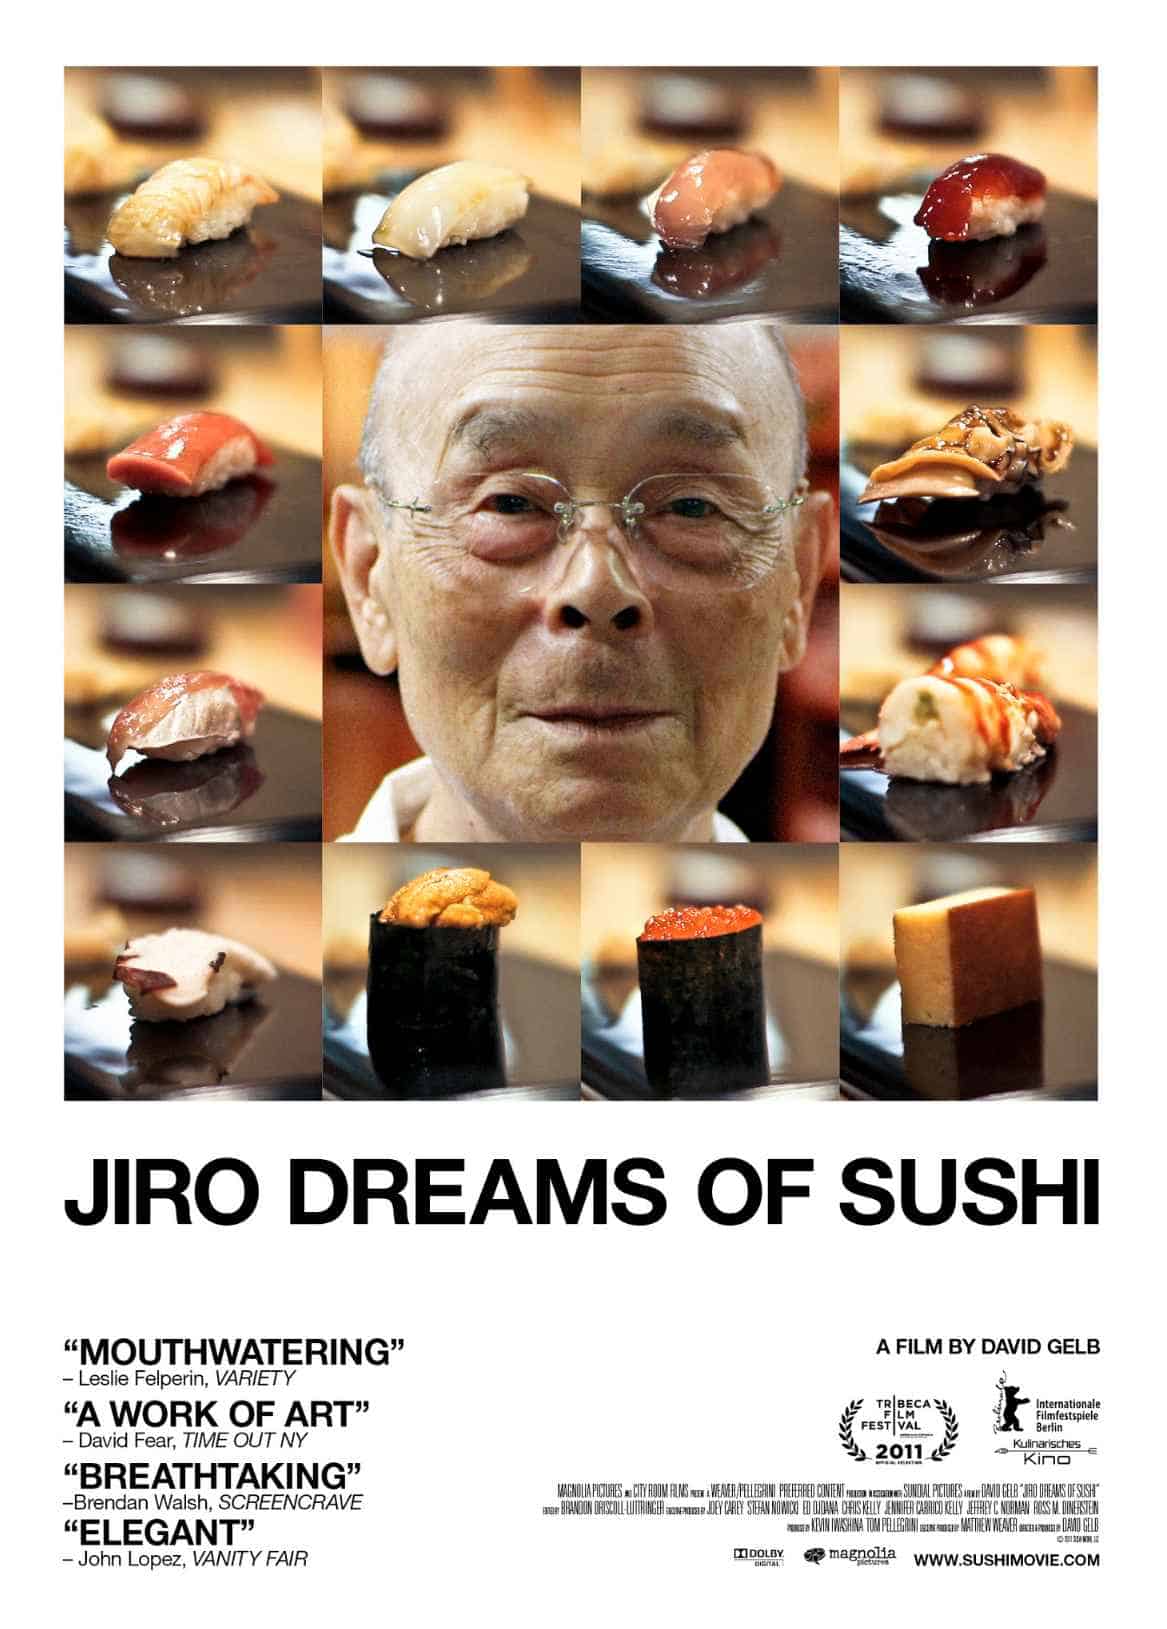  Jiro Dreams of Sushi (2011)